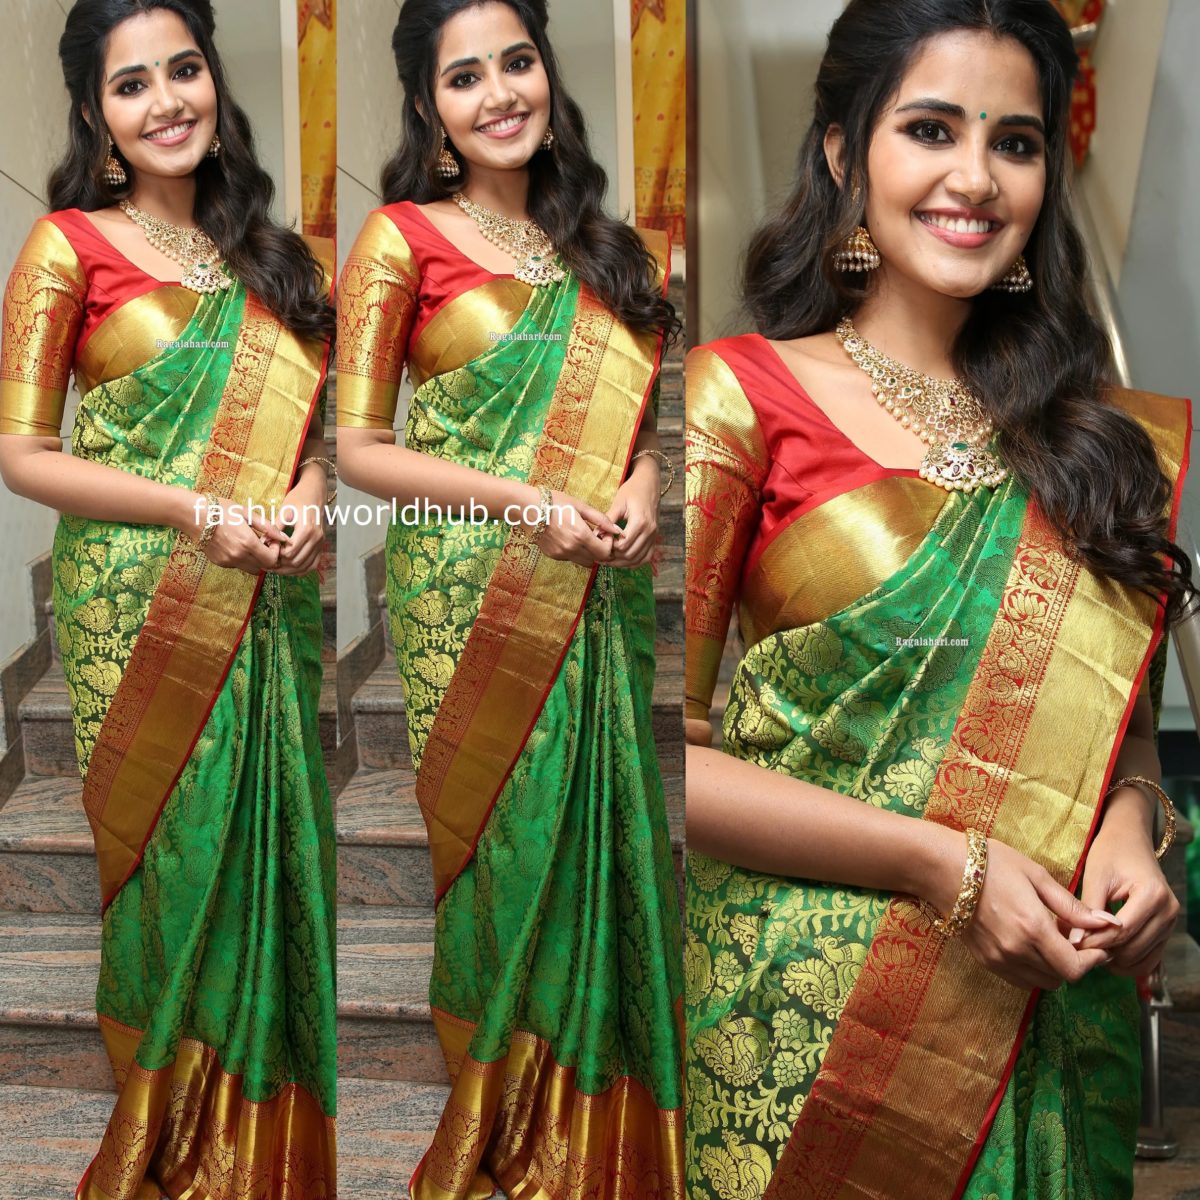 Rashmika Mandanna in a green silk saree! | Fashionworldhub